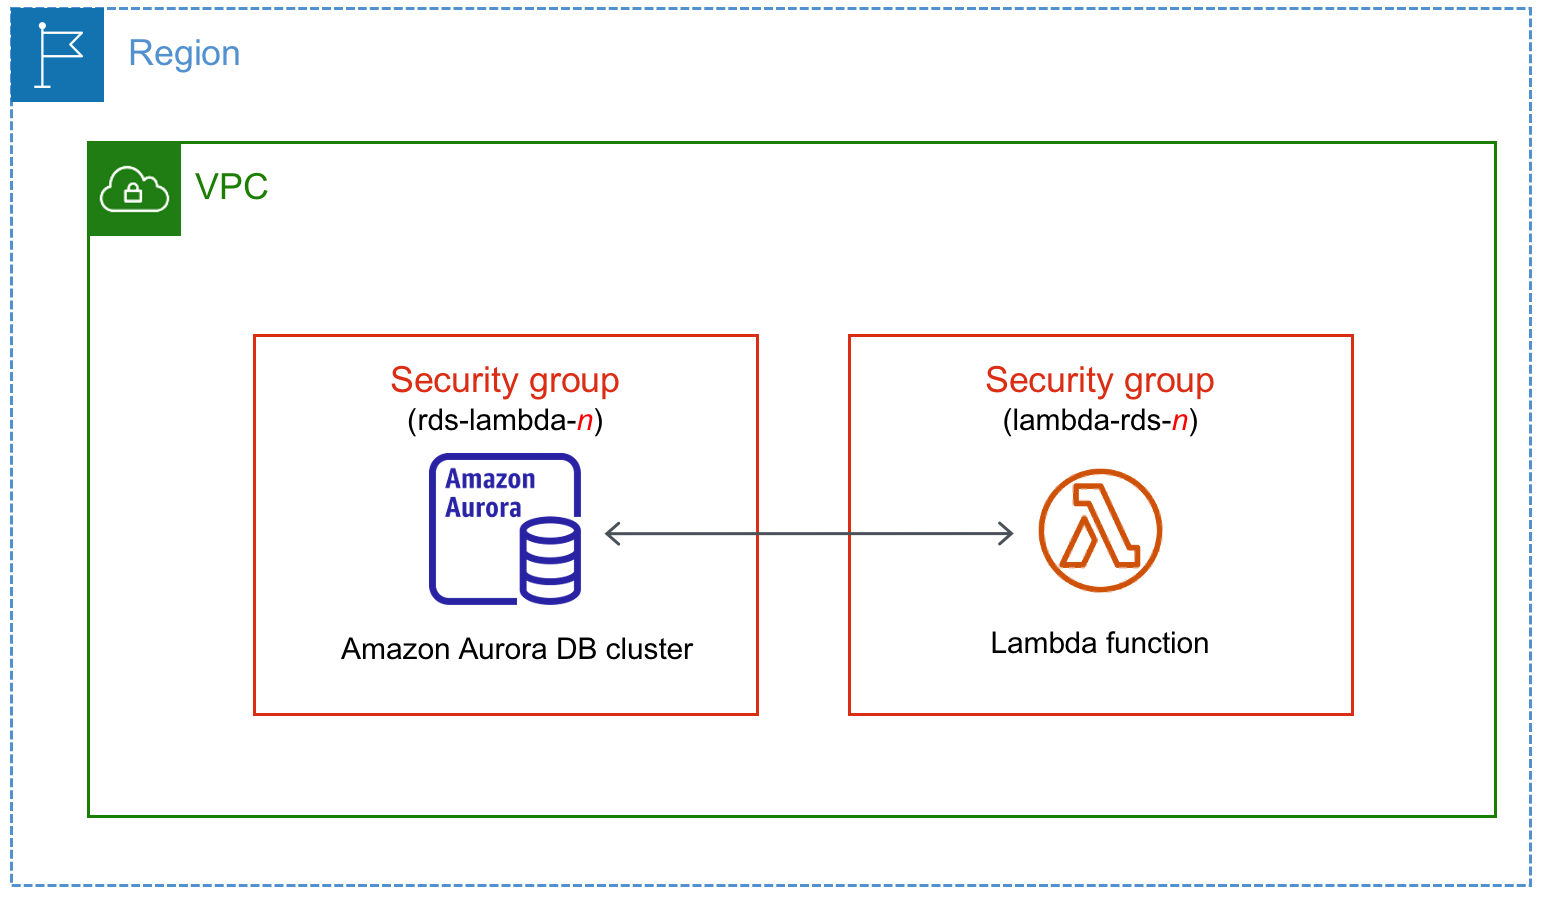 Conectar automaticamente um cluster de banco de dados do Aurora a uma função do Lambda